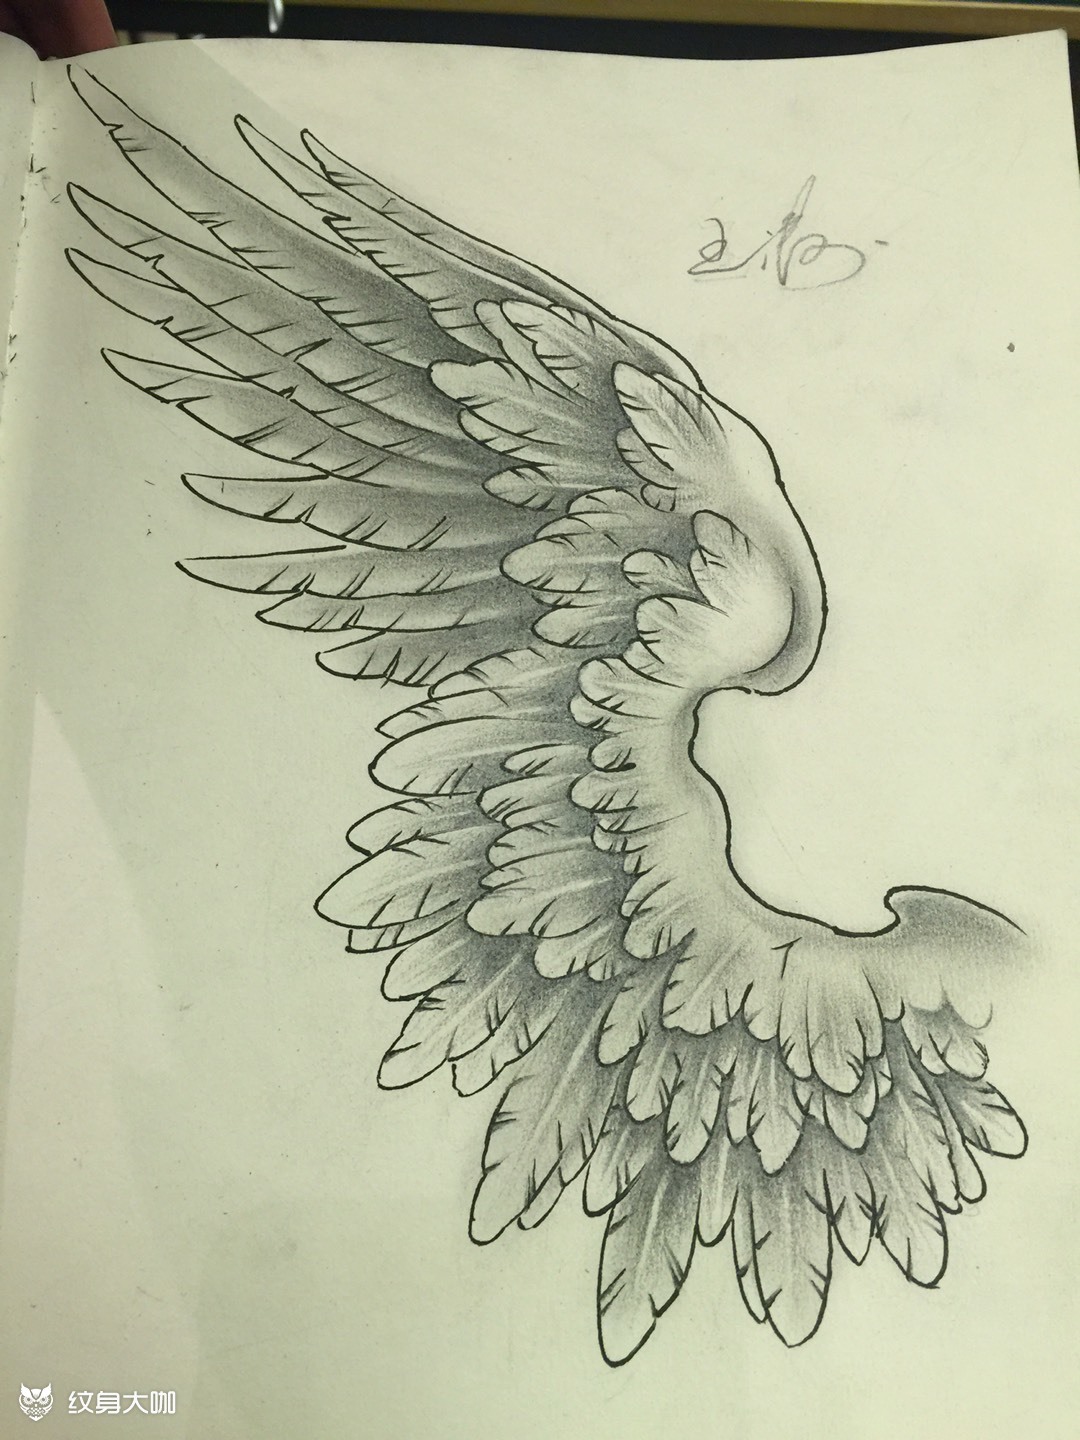 翅膀纹身手稿手臂图片